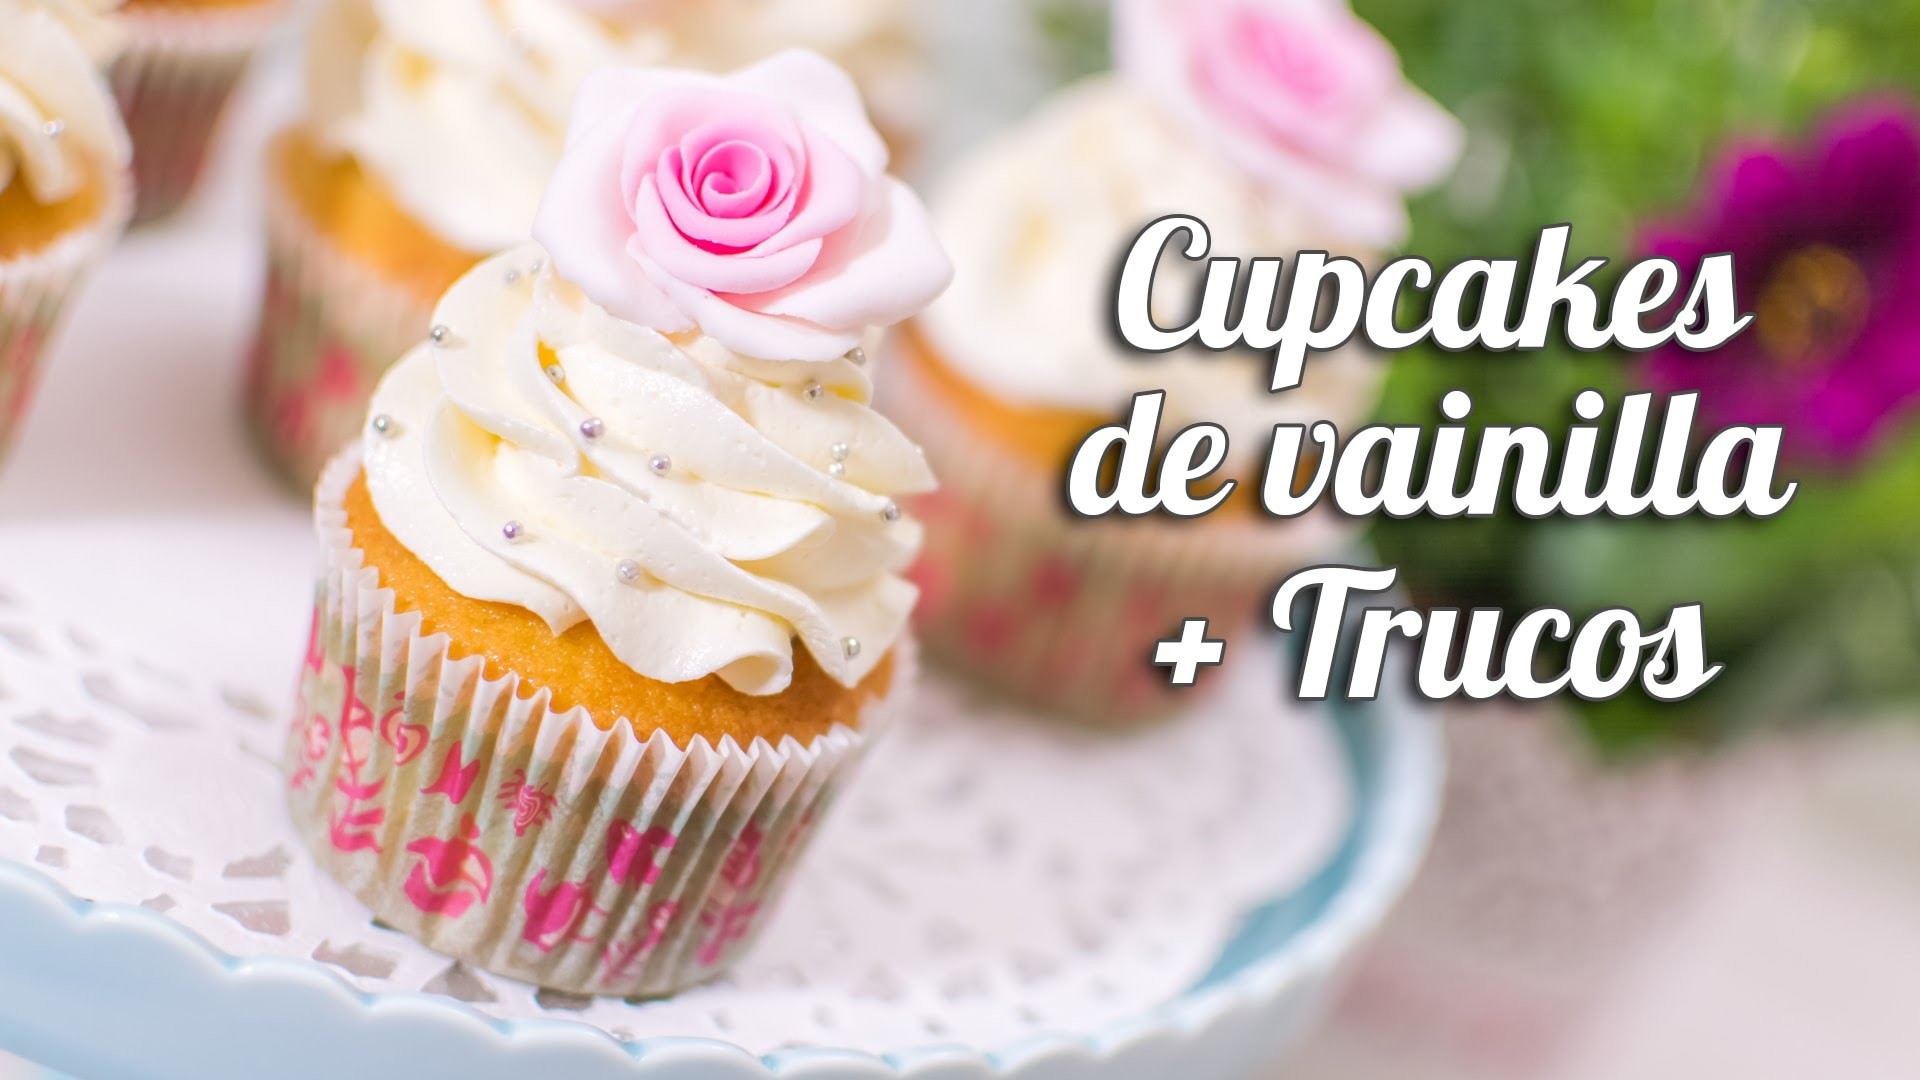 Cupcake de vainilla + trucos para cupcakes perfectos